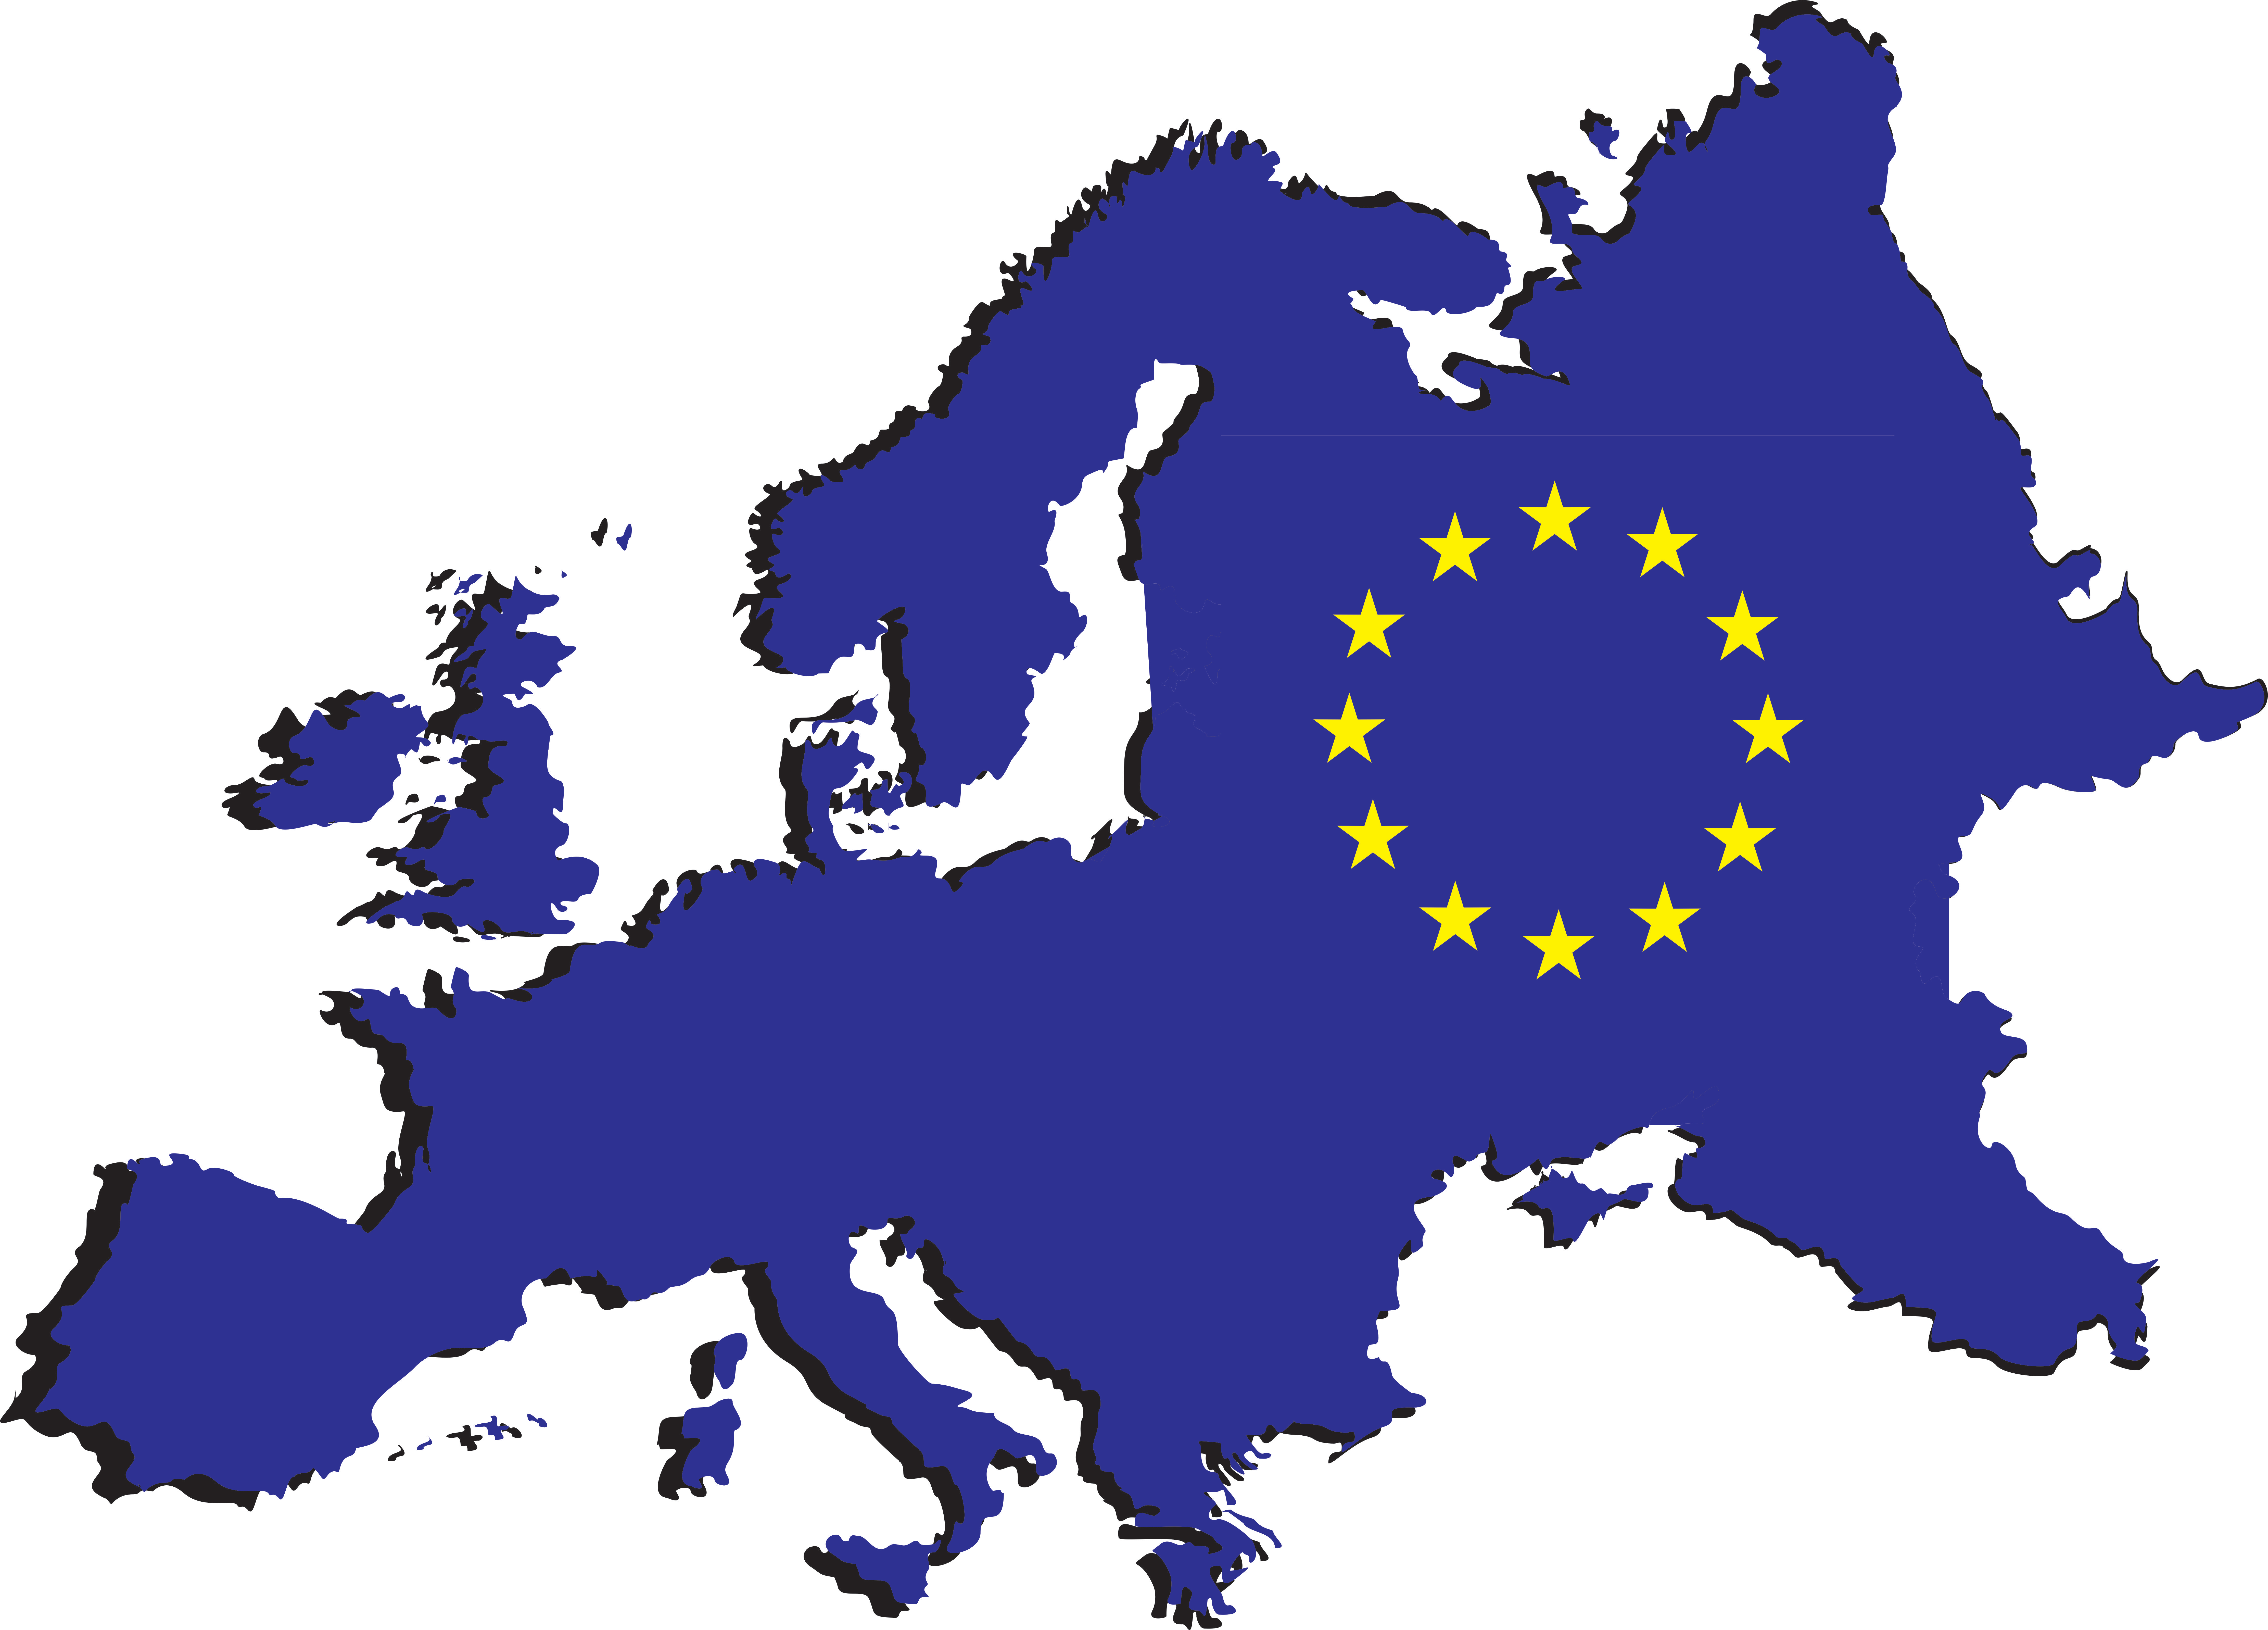 Карта стран ЕС, ВНЖ которых по учебе и работе могут получить иностранцы